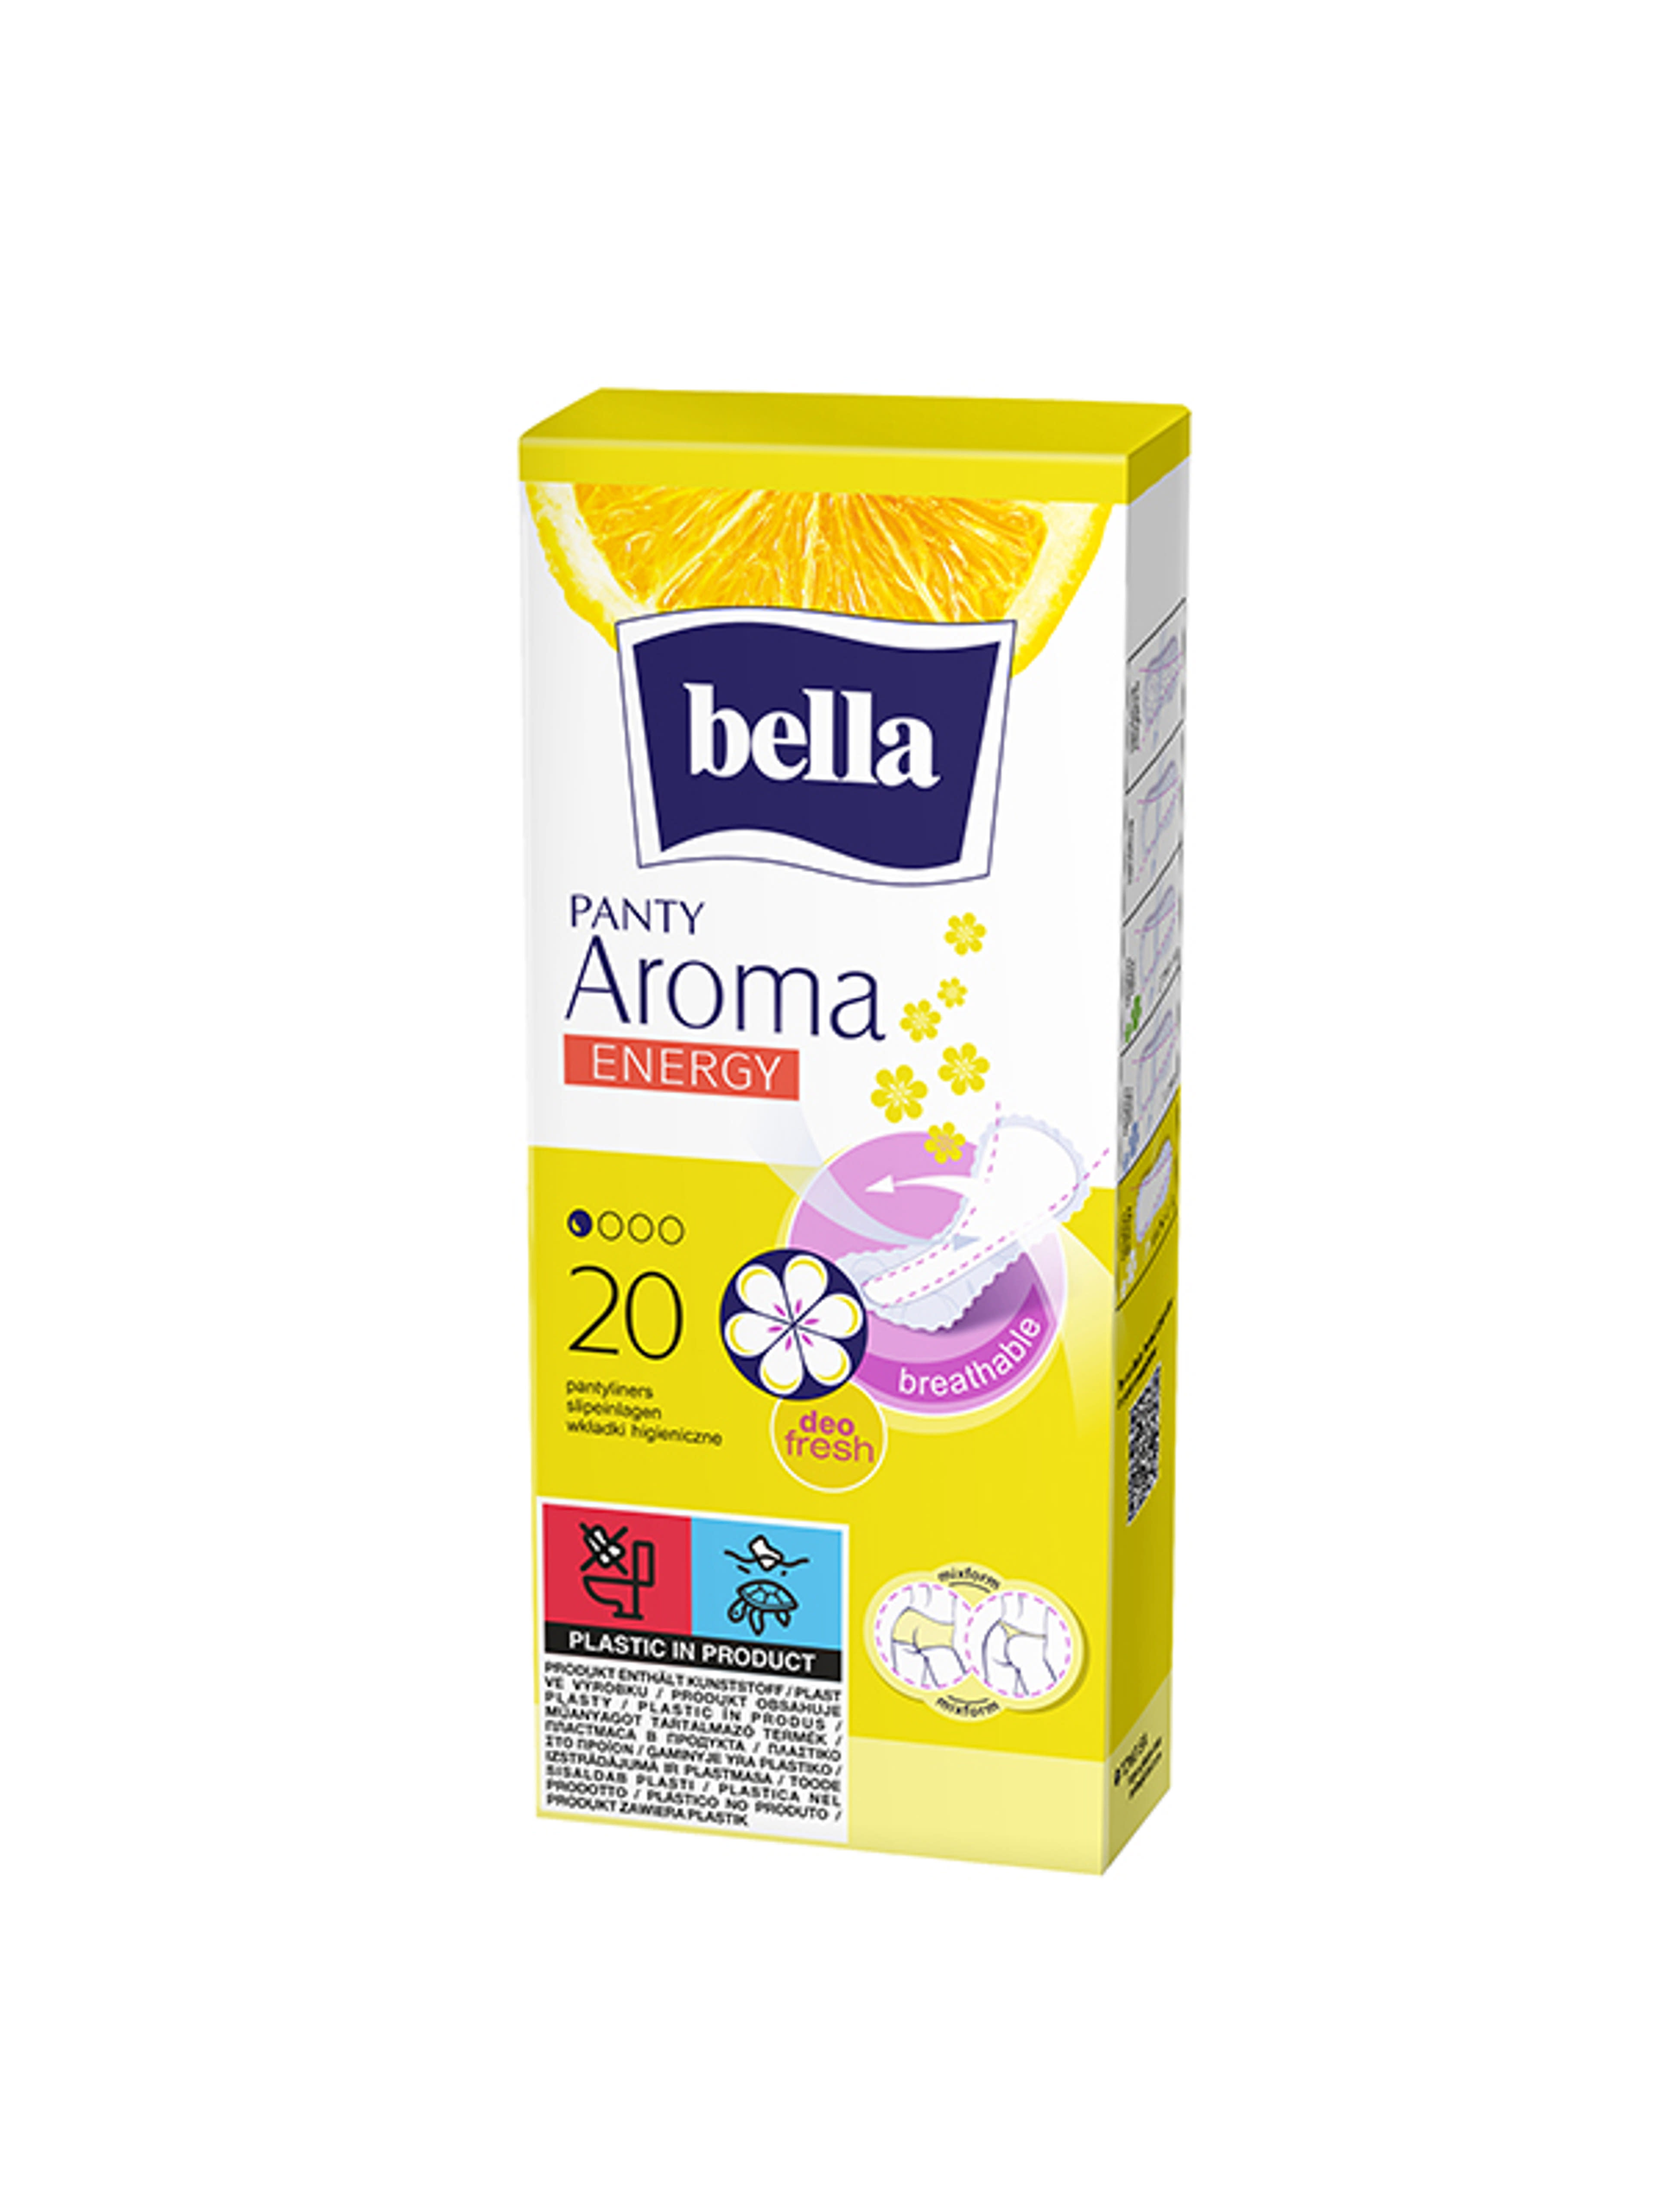 Bella Panty Aroma Energy tisztasági betét - 20 db-1